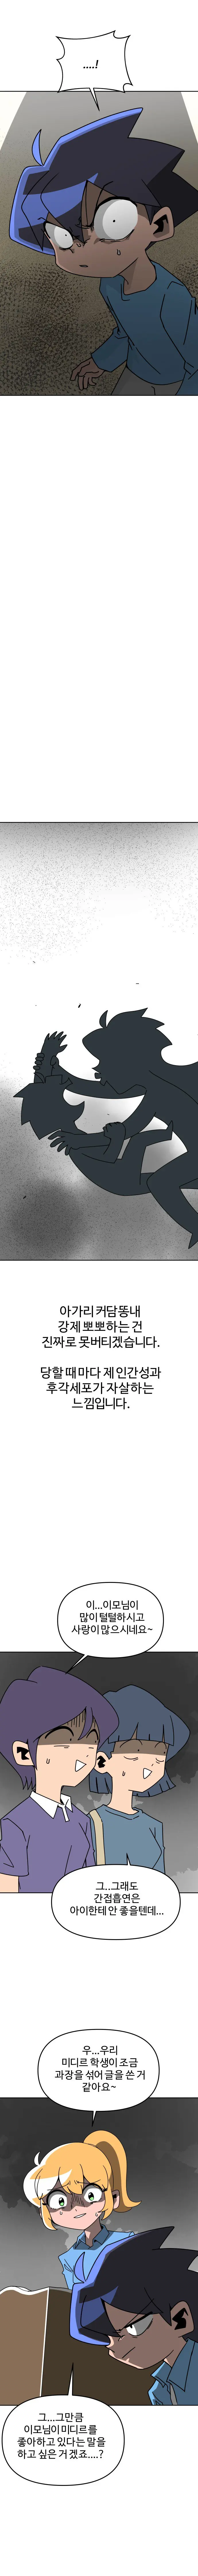 학교에서 가족소개하는 만화.manhwa | mbong.kr 엠봉